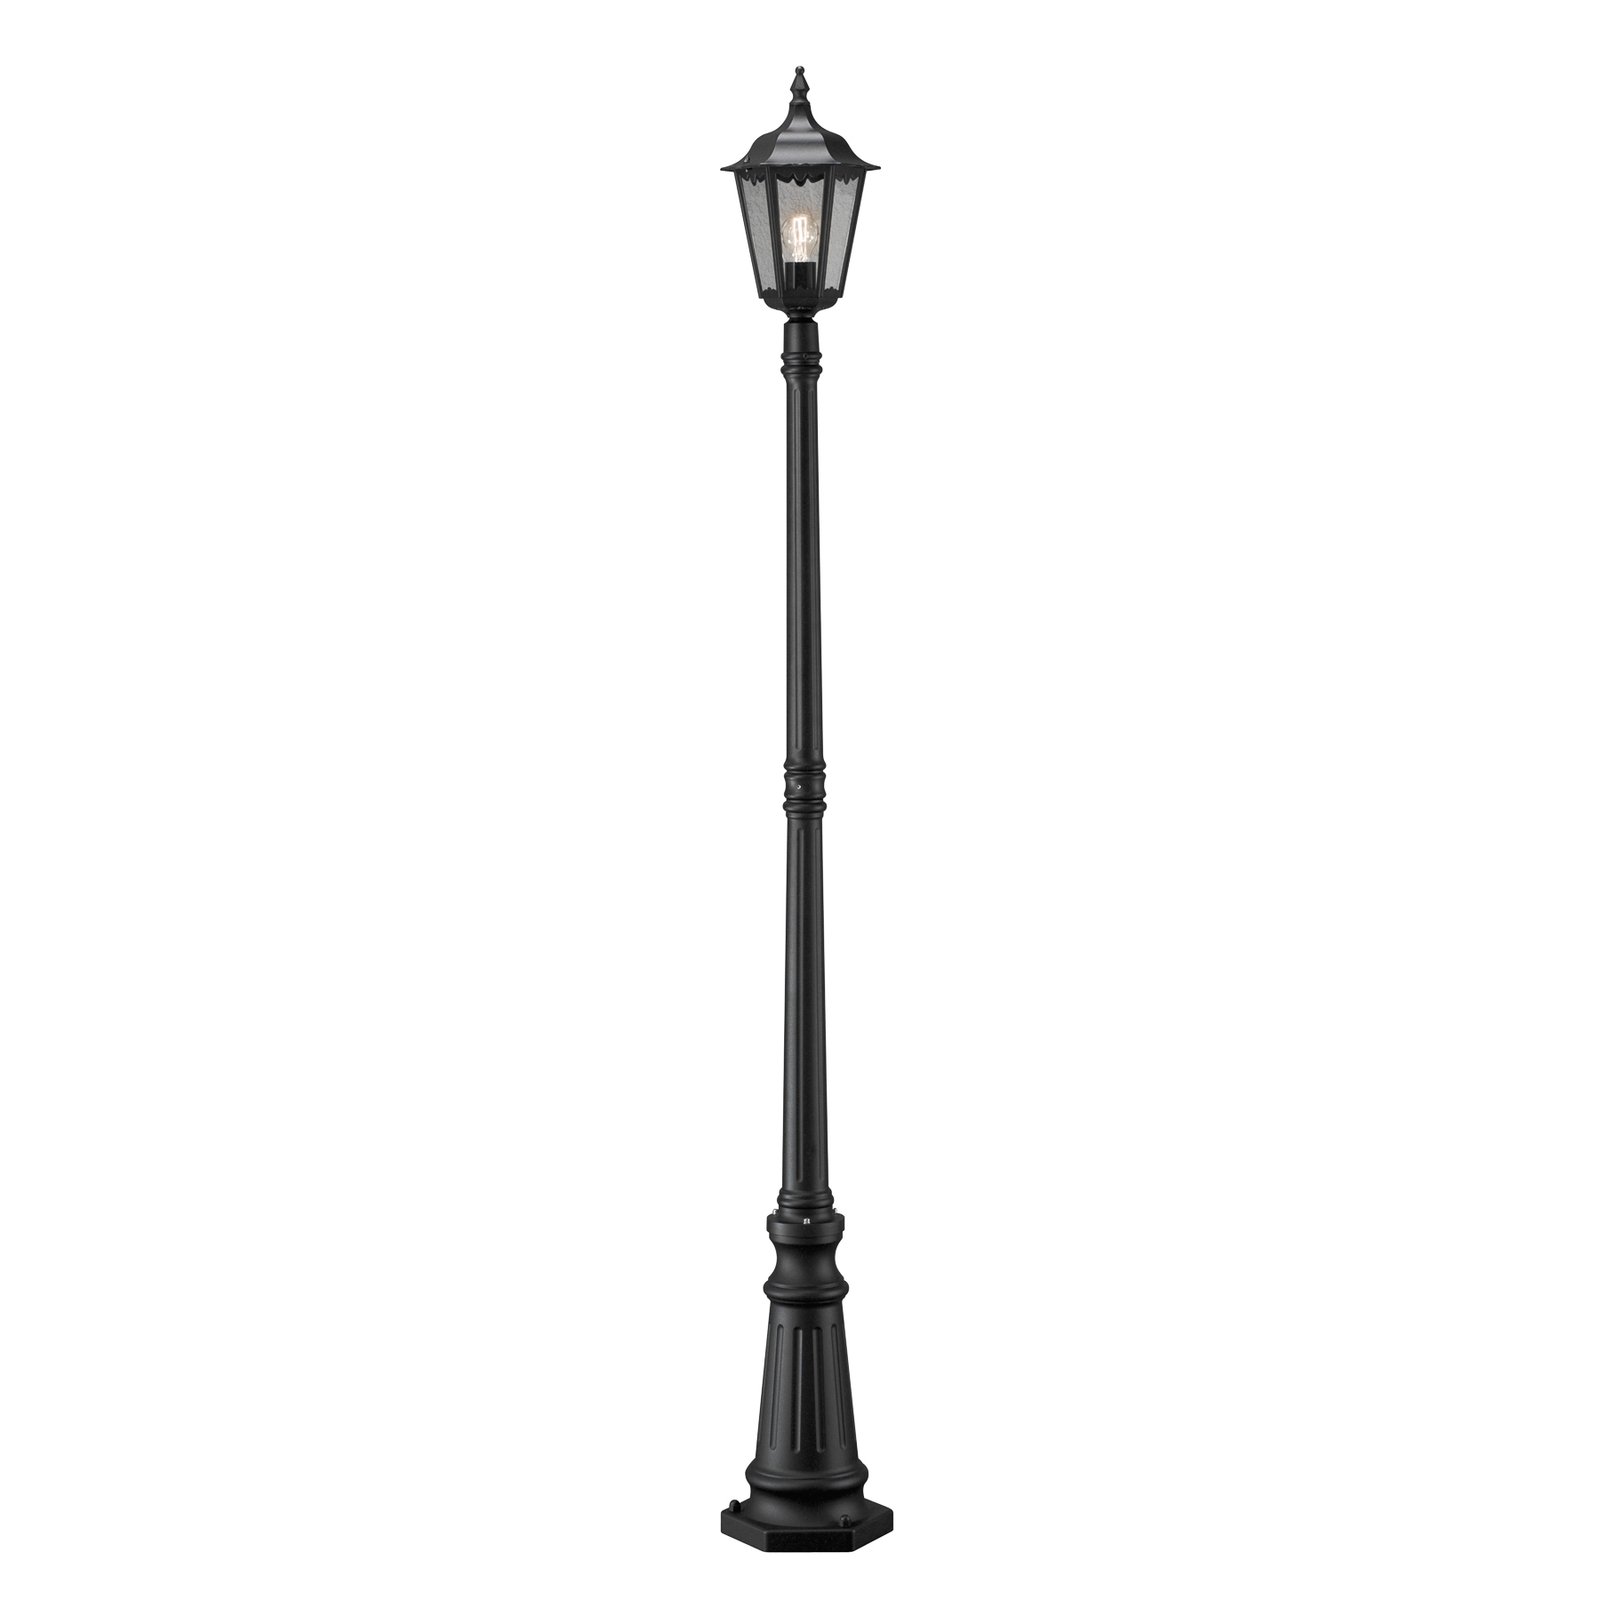 Lyktstolpe Firenze, 1 lampa, svart